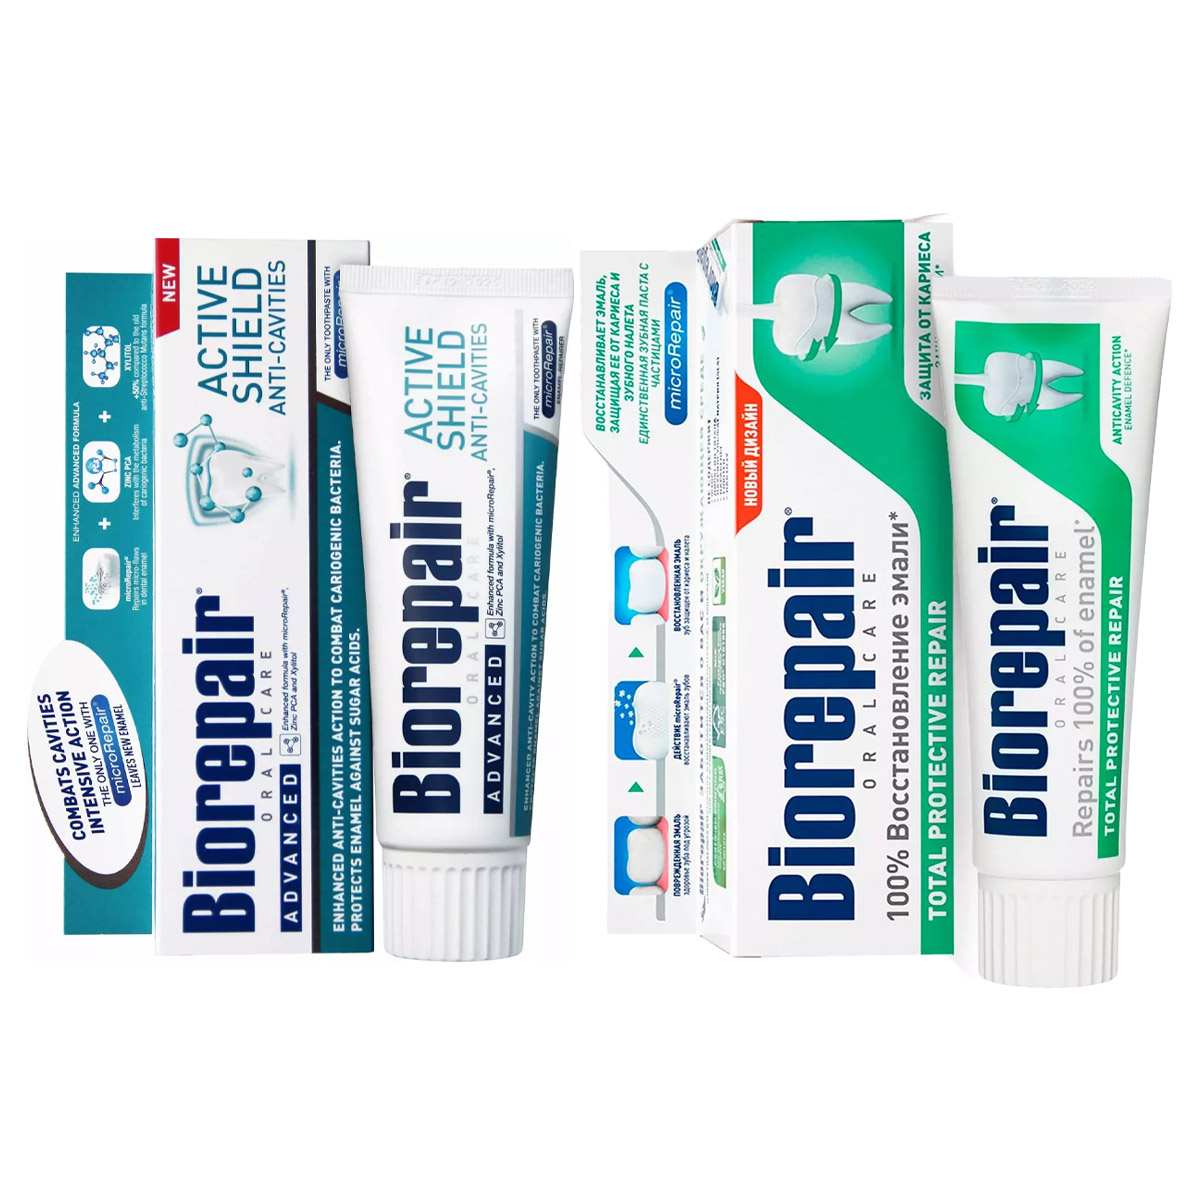 Biorepair Набор зубных паст для комплексной защиты зубов и эмали, 2х75 мл (Biorepair, Ежедневная забота) biorepair набор зубных паст для комплексной защиты 2х75 мл biorepair ежедневная забота